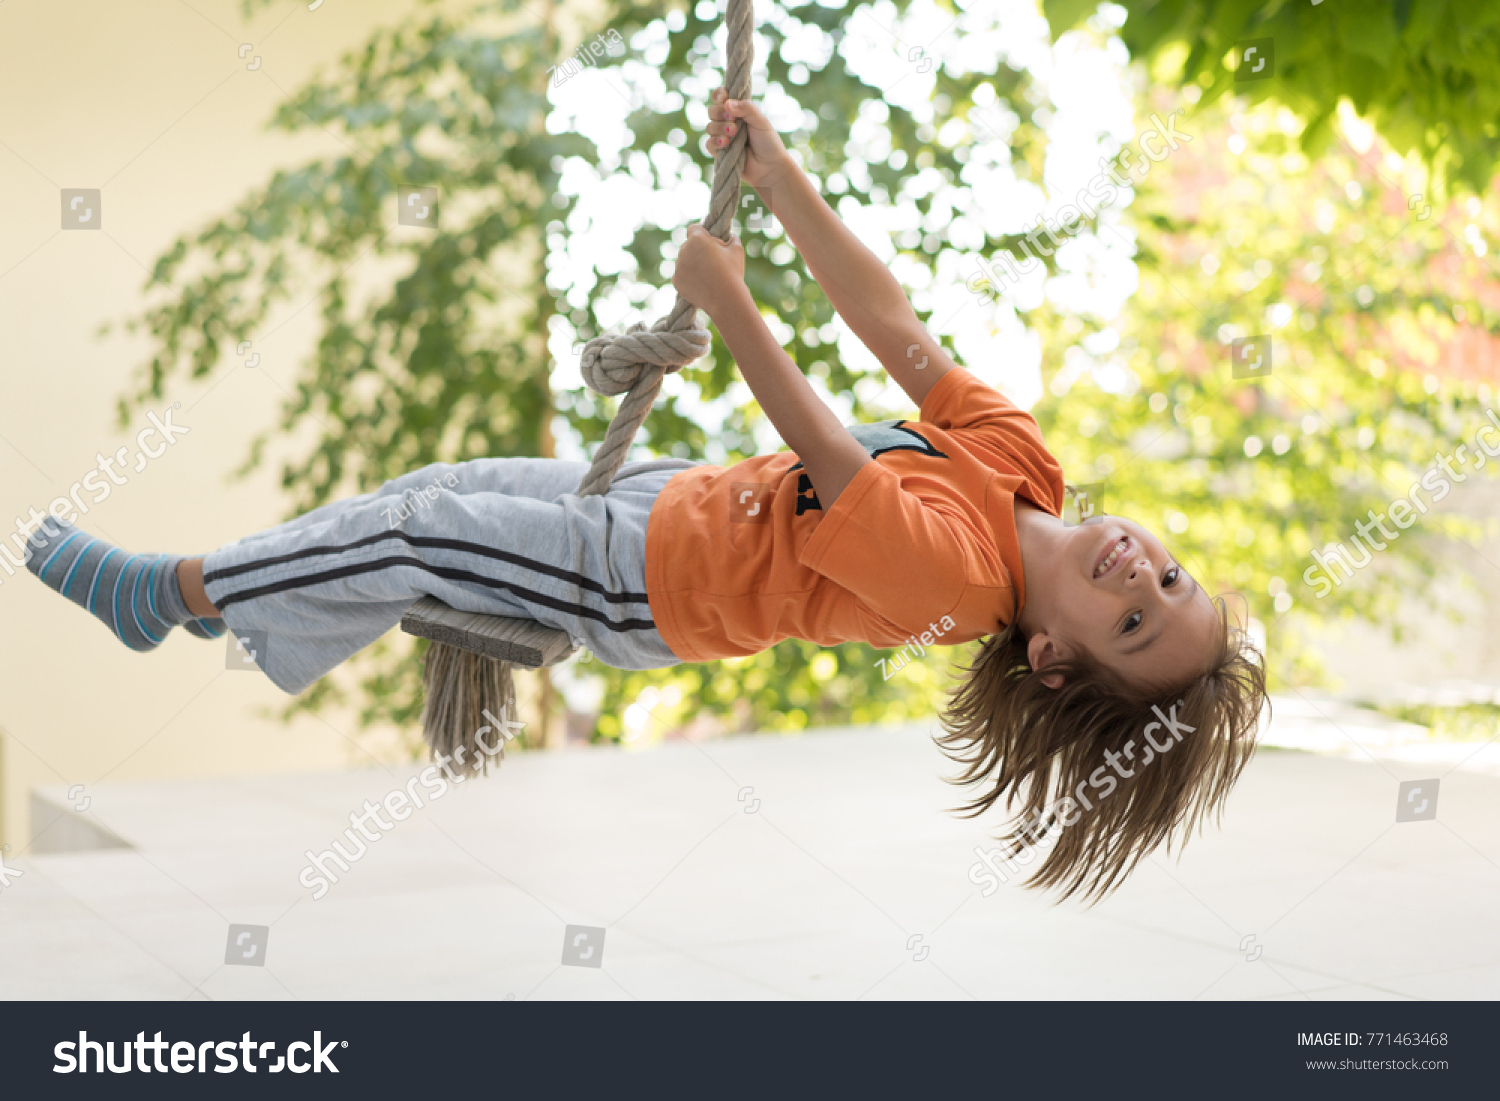 Cute happy little boy upside down on swing rope #771463468